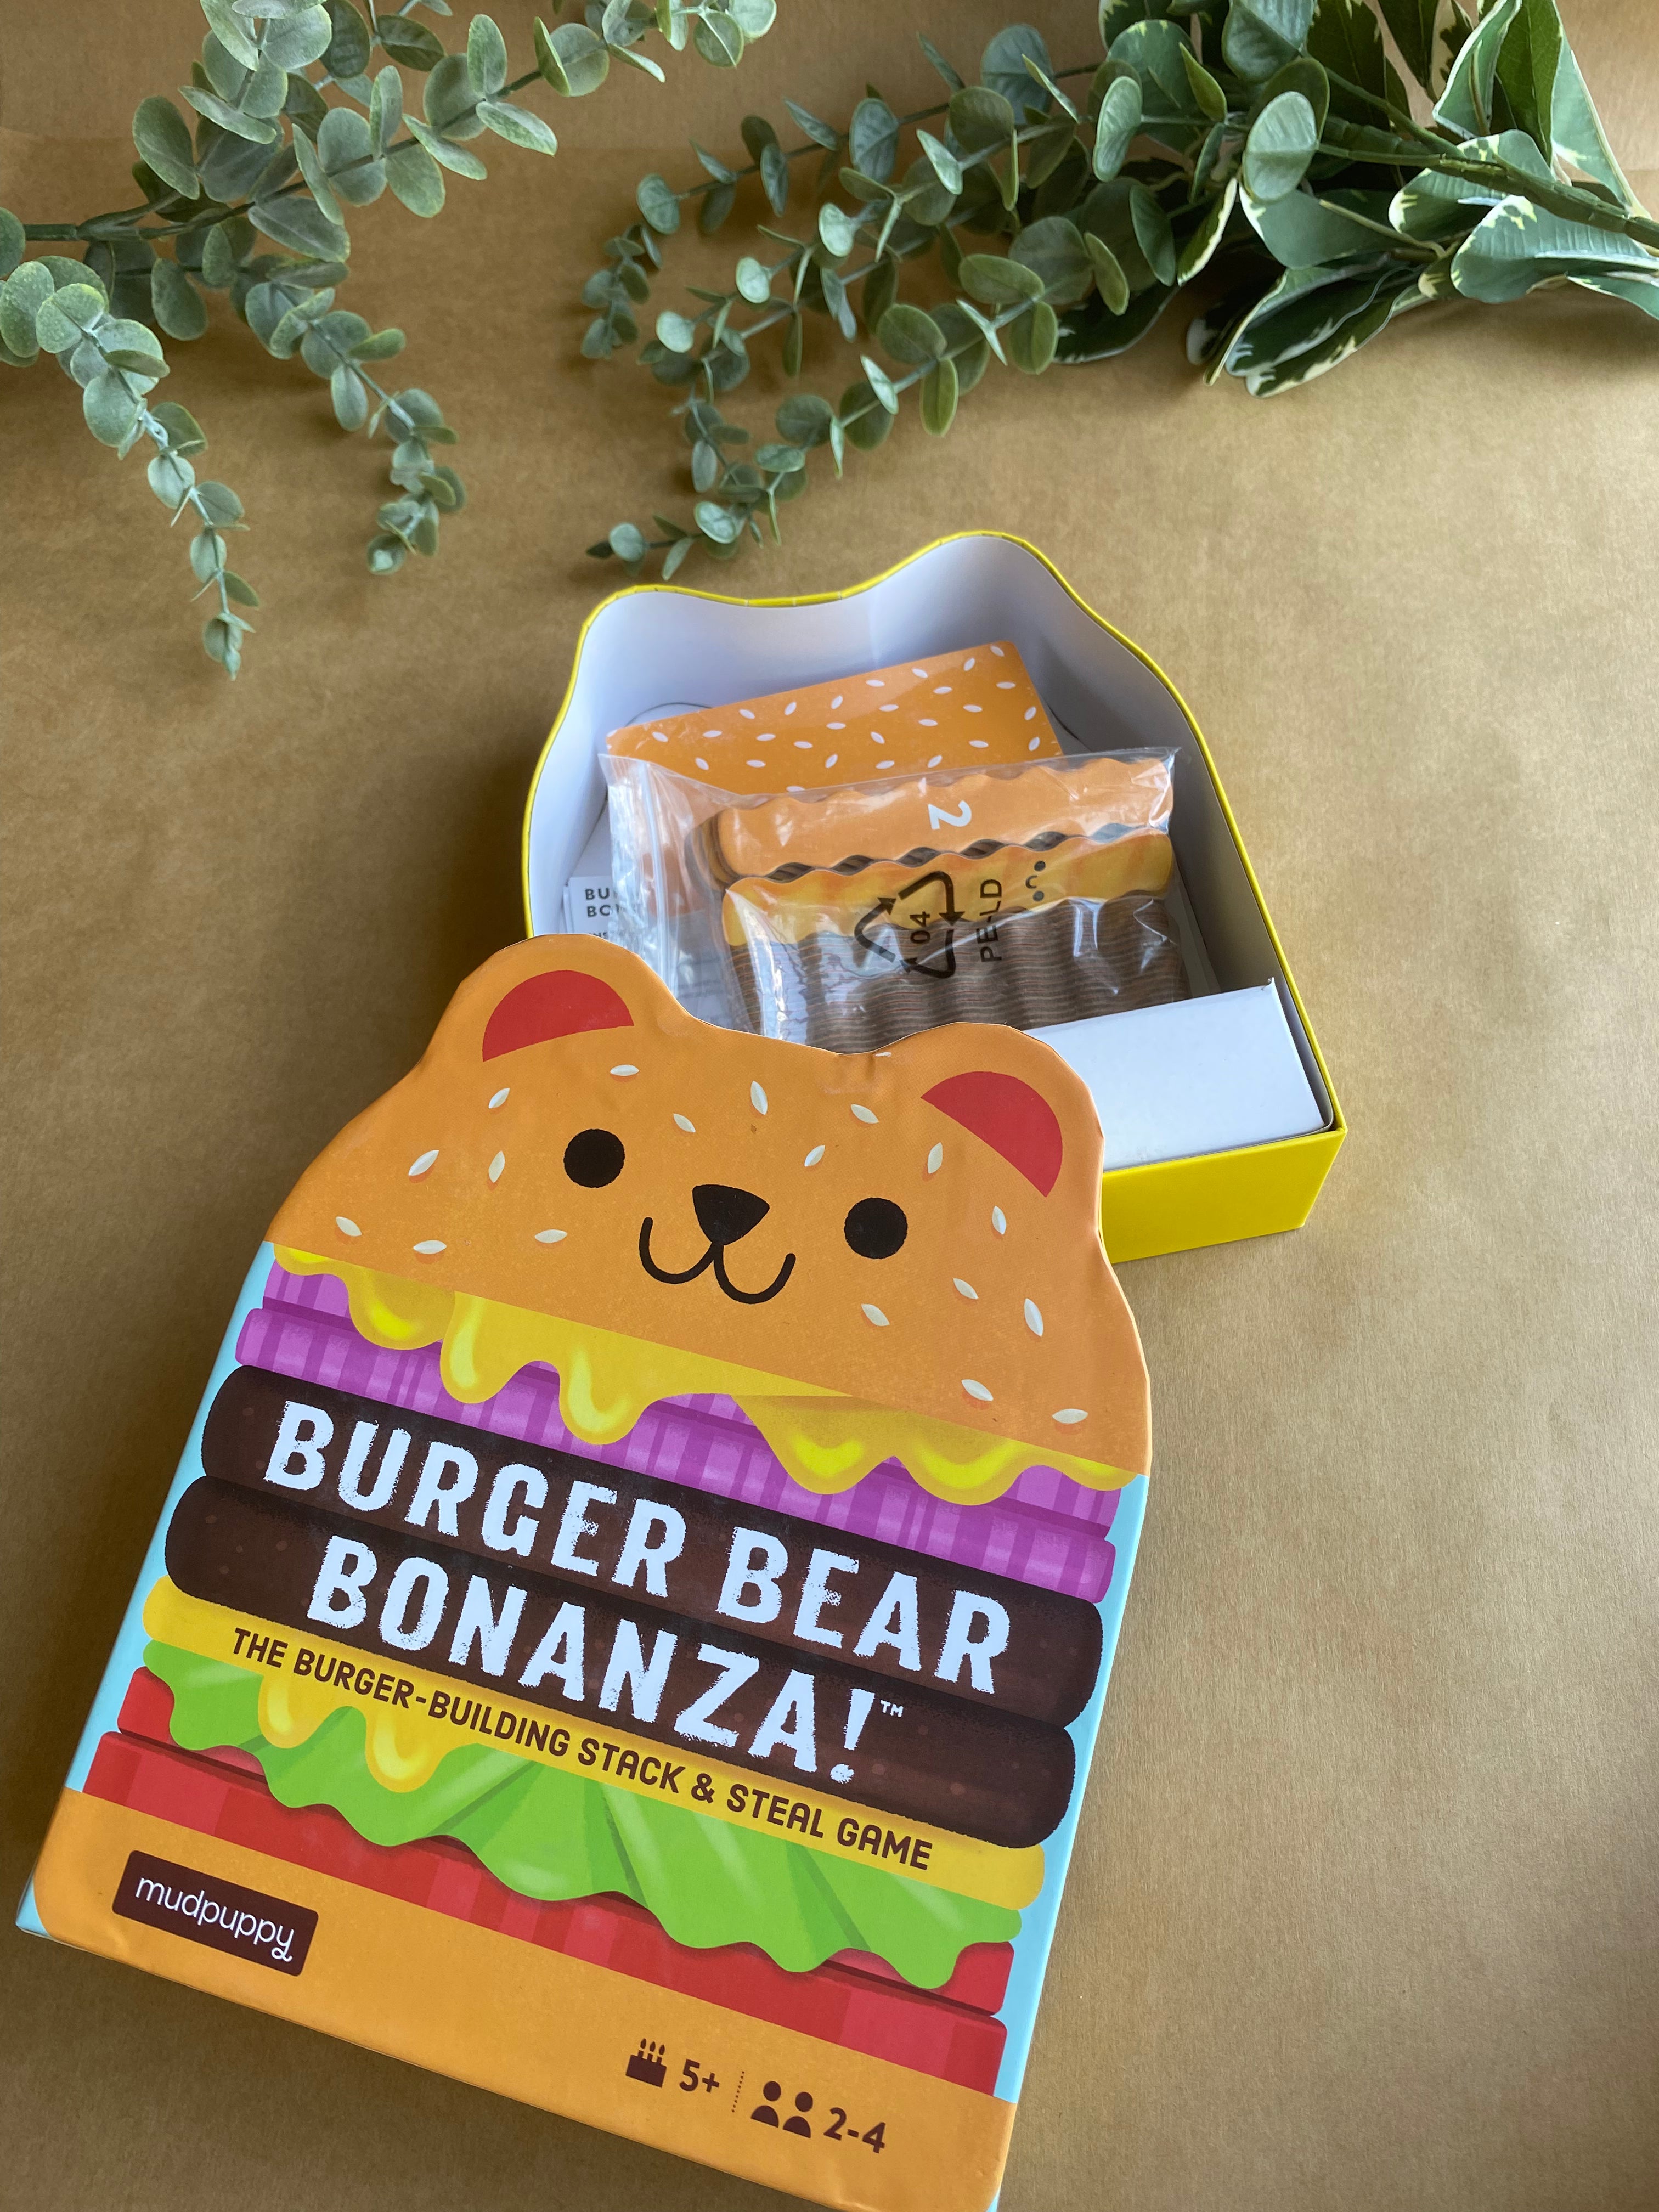 Burger Bear Bonanza Game